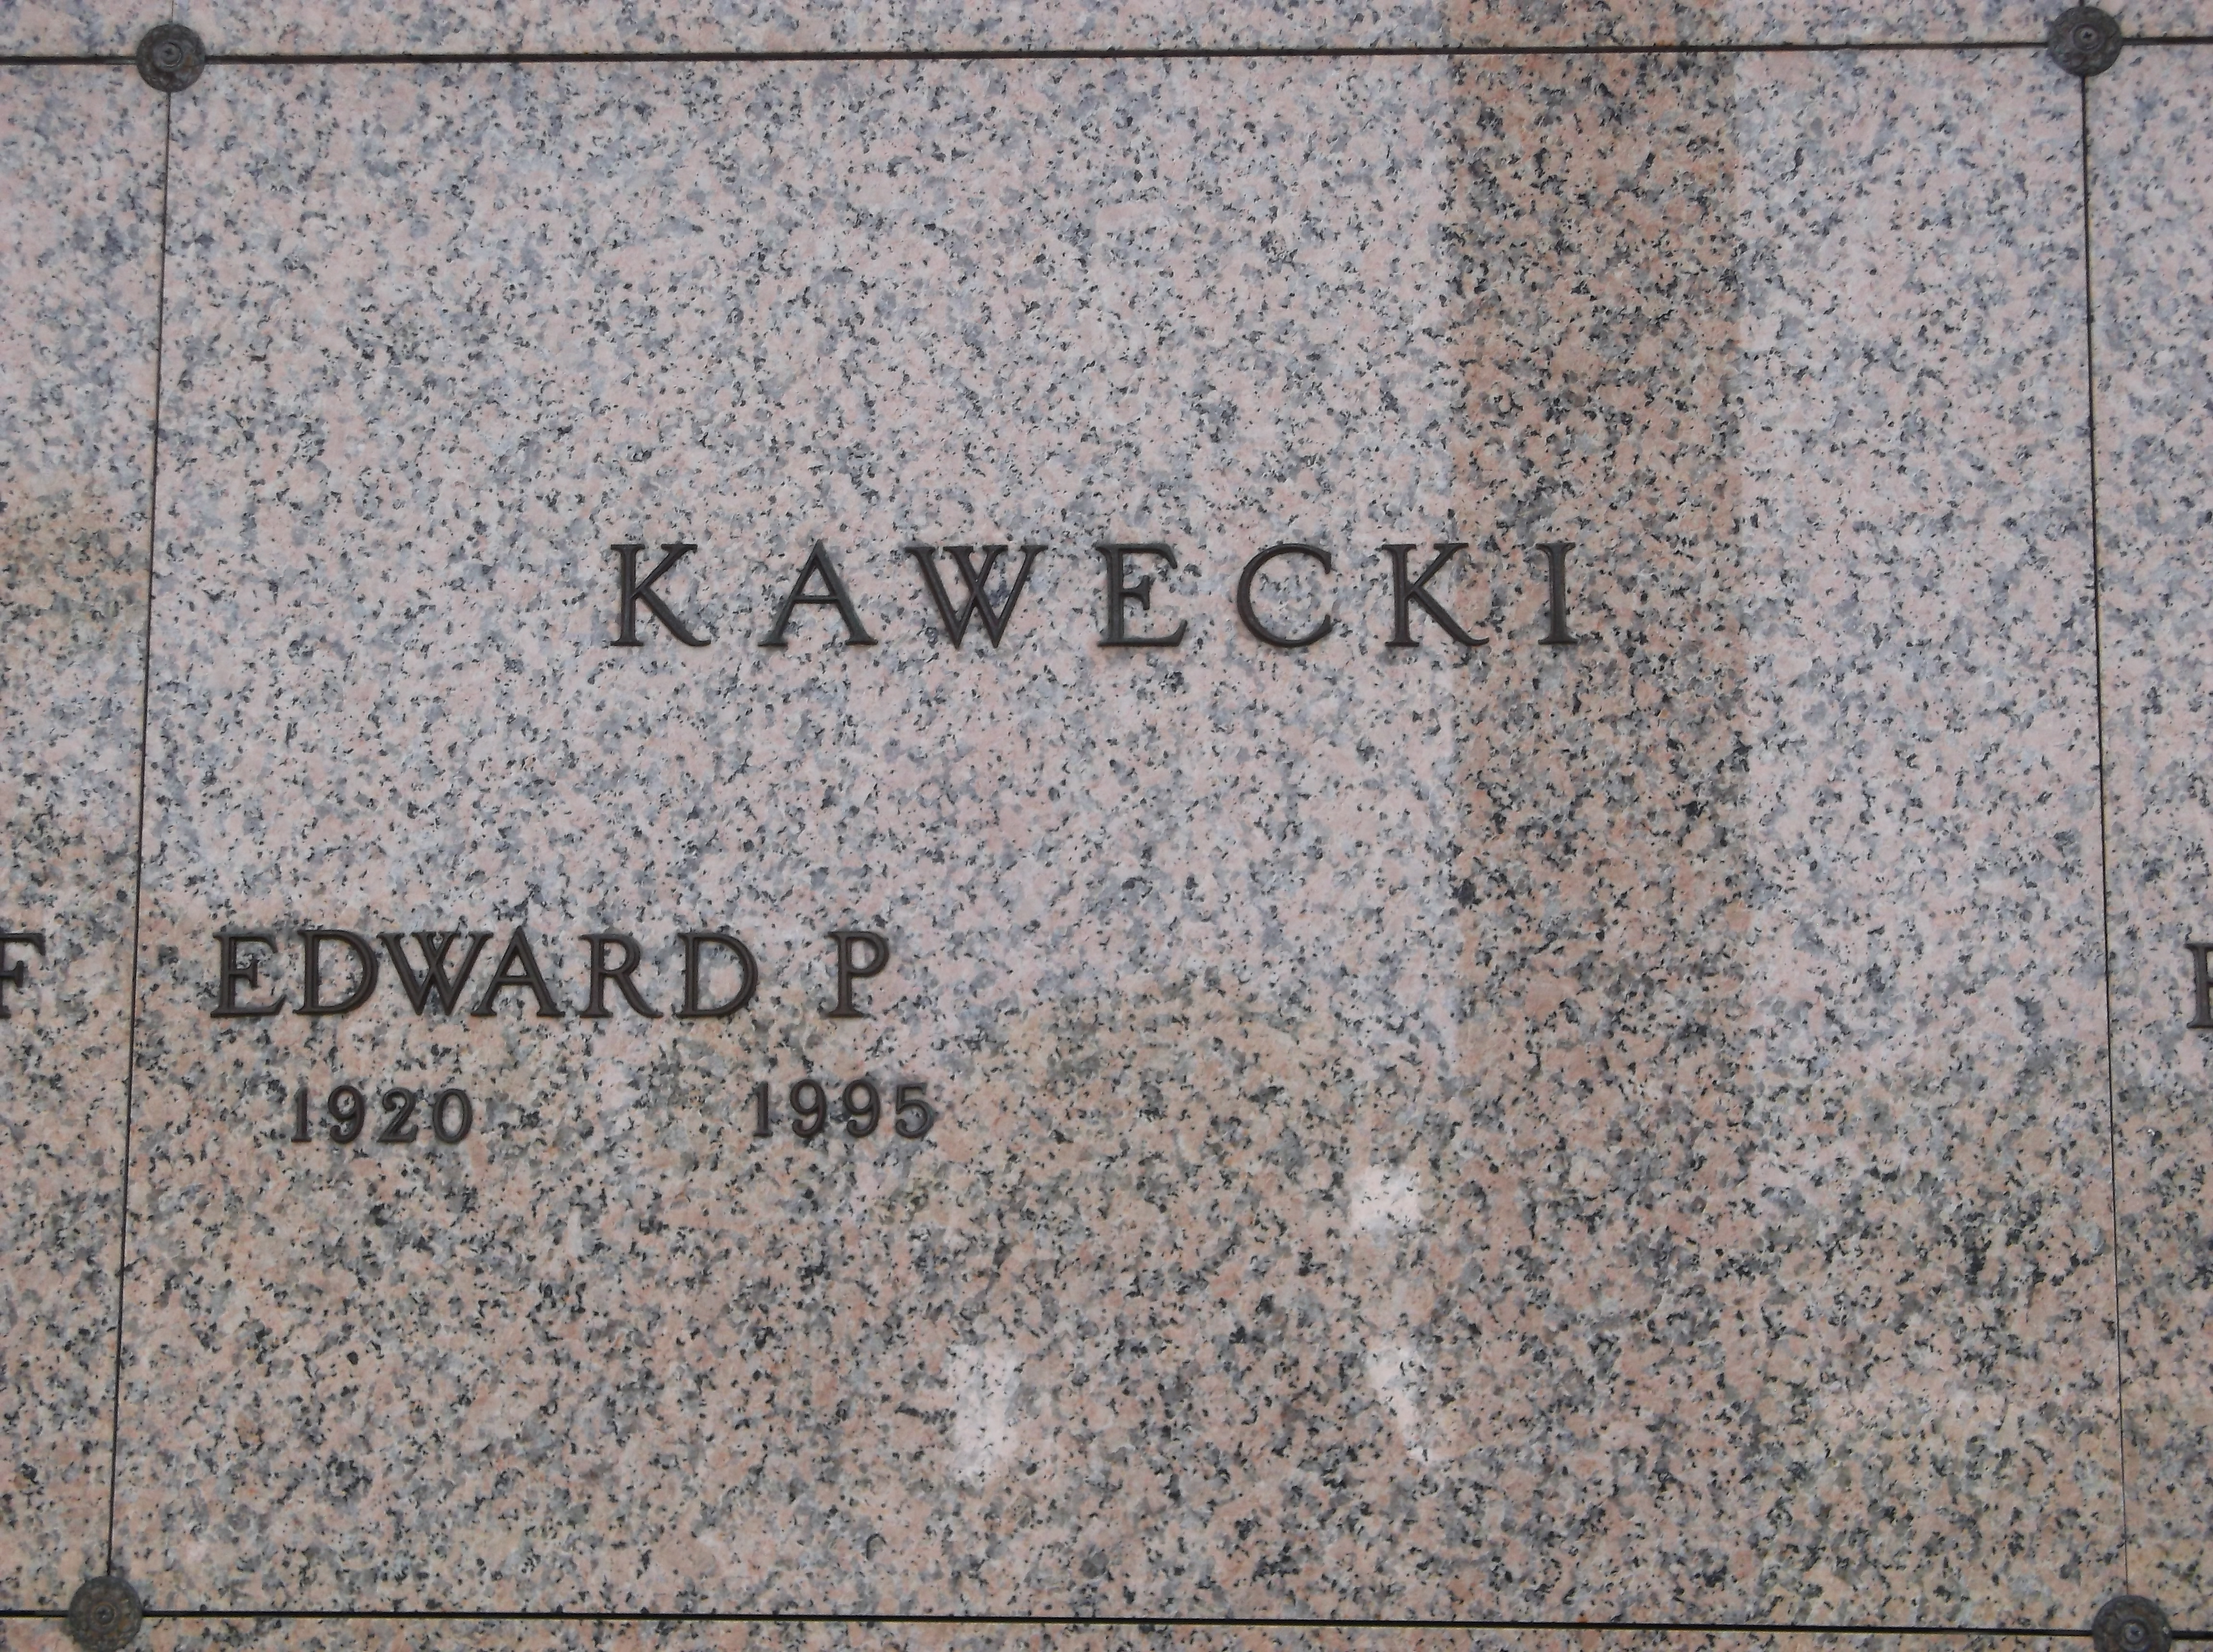 Edward P Kawecki